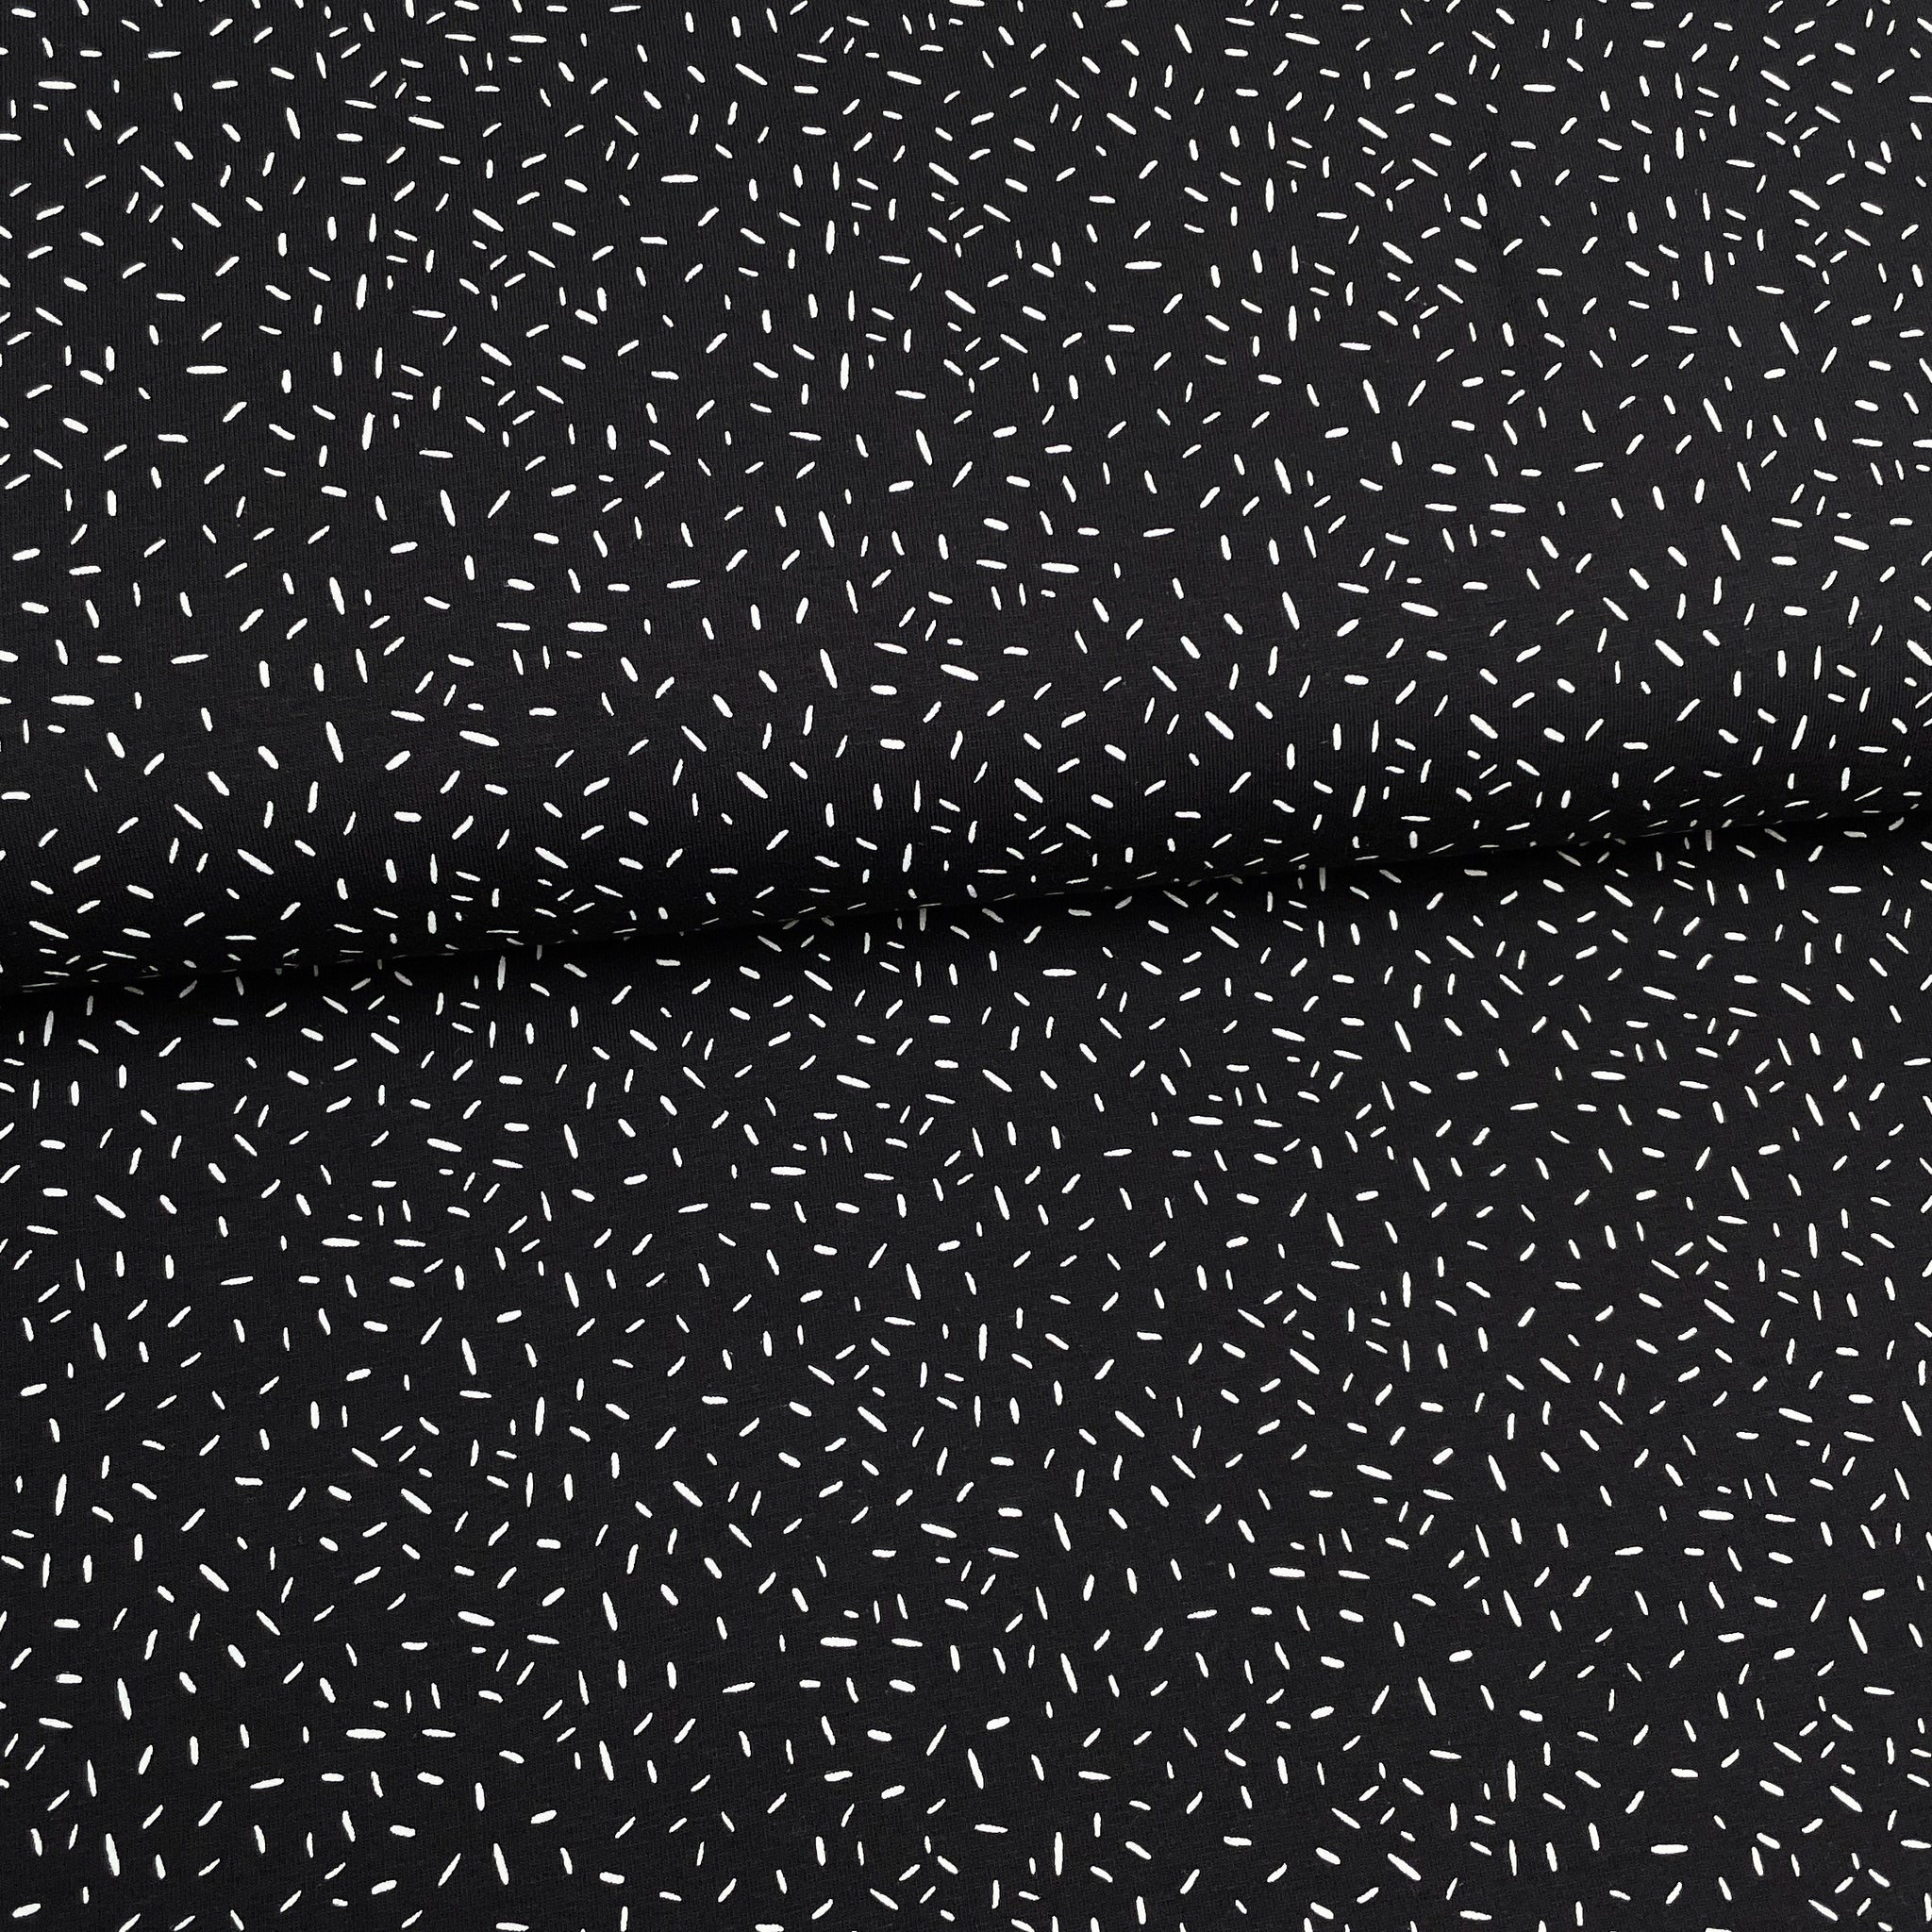 Confettis noir - Jersey imprimé